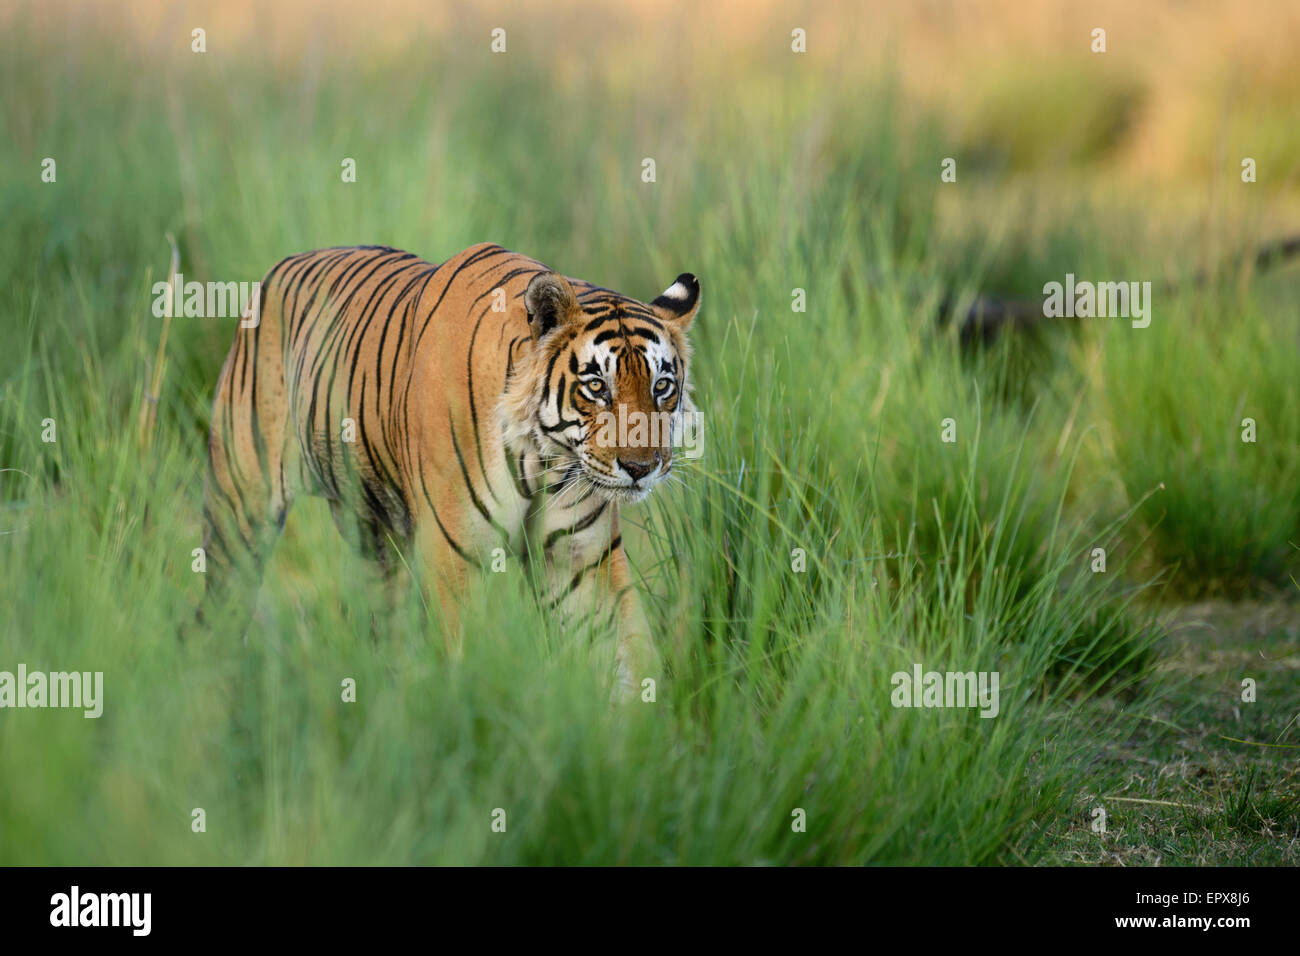 Tigre du Bengale mâle dominant 'Star' ou T28 marche à travers l'herbe verte dans la Réserve de tigres de Ranthambhore, Rajasthan, Inde. Banque D'Images